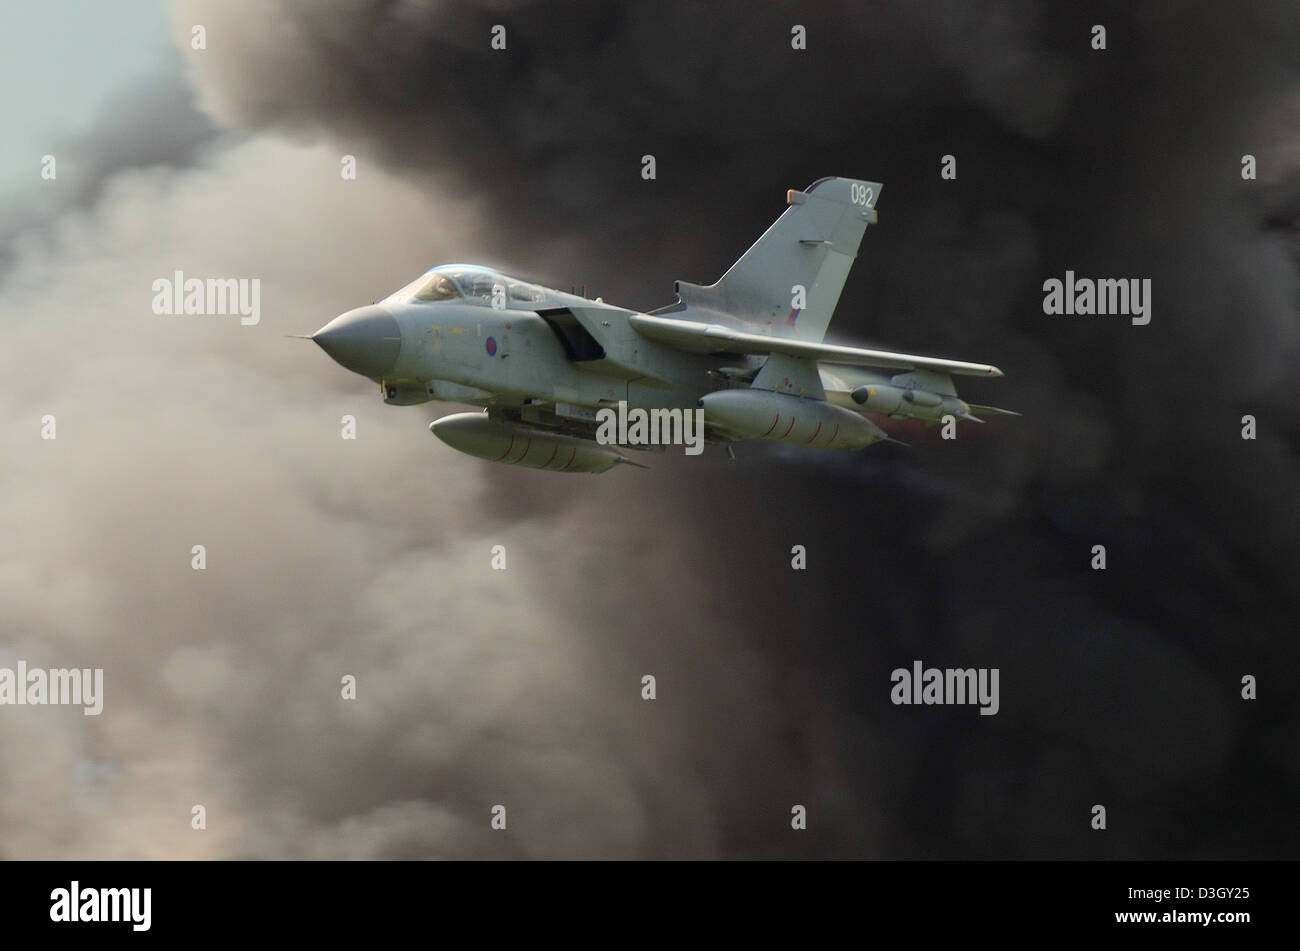 Royal Air Force Panavia Tornado GR4 avión de combate a reacción que participa en una demostración con pirotecnia. Humo de explosión Foto de stock